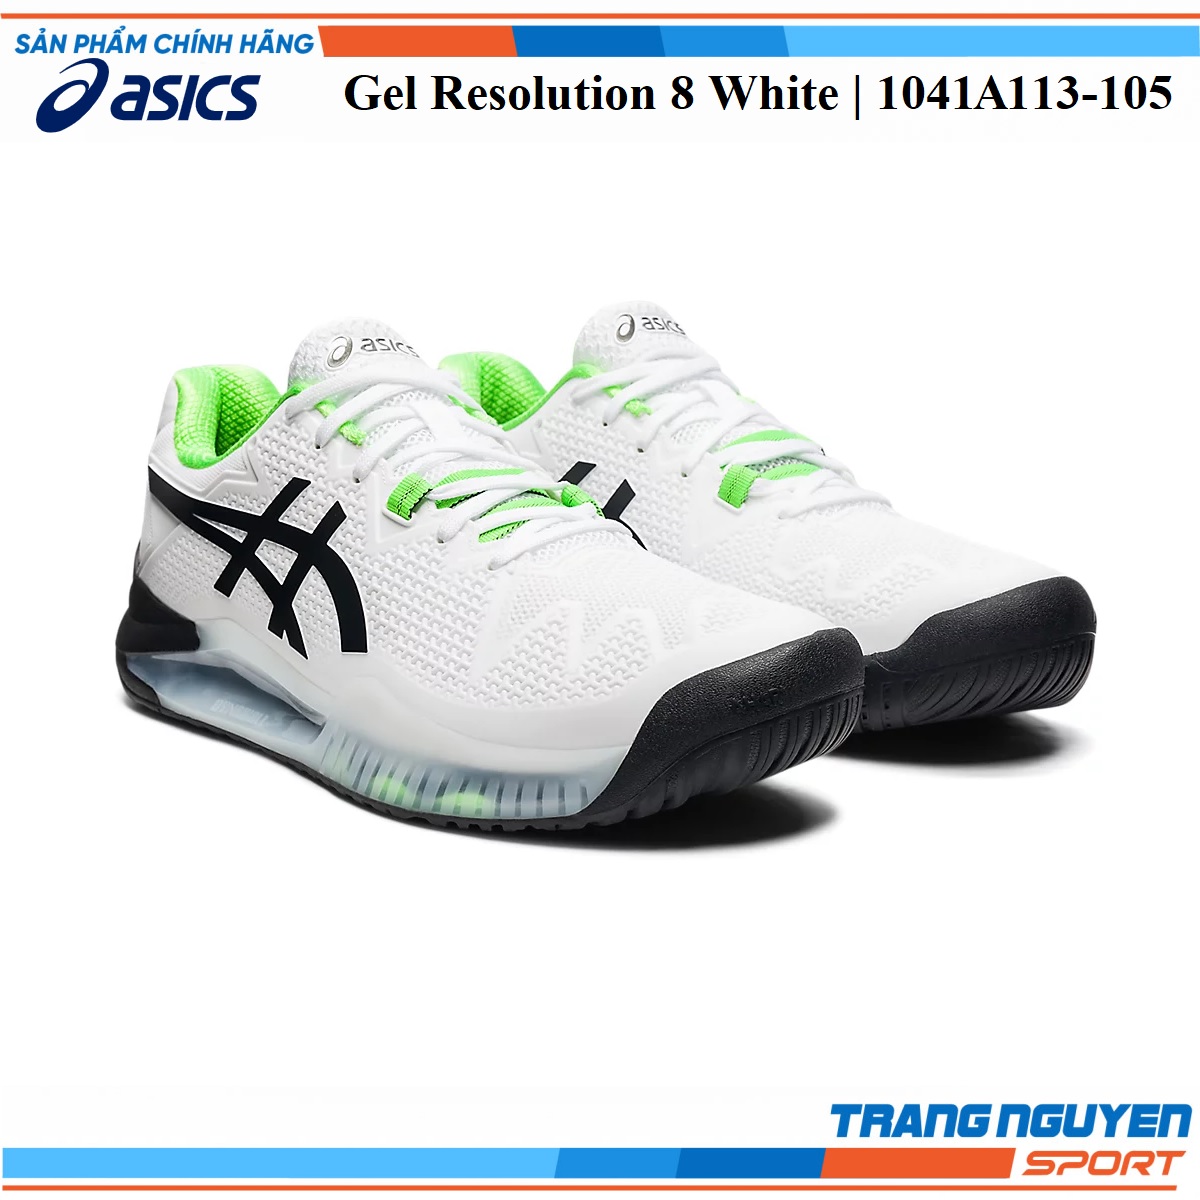 Giày Tennis Asics Gel Resolution 8 White Năm 2022 () | Trang  Nguyên Sport